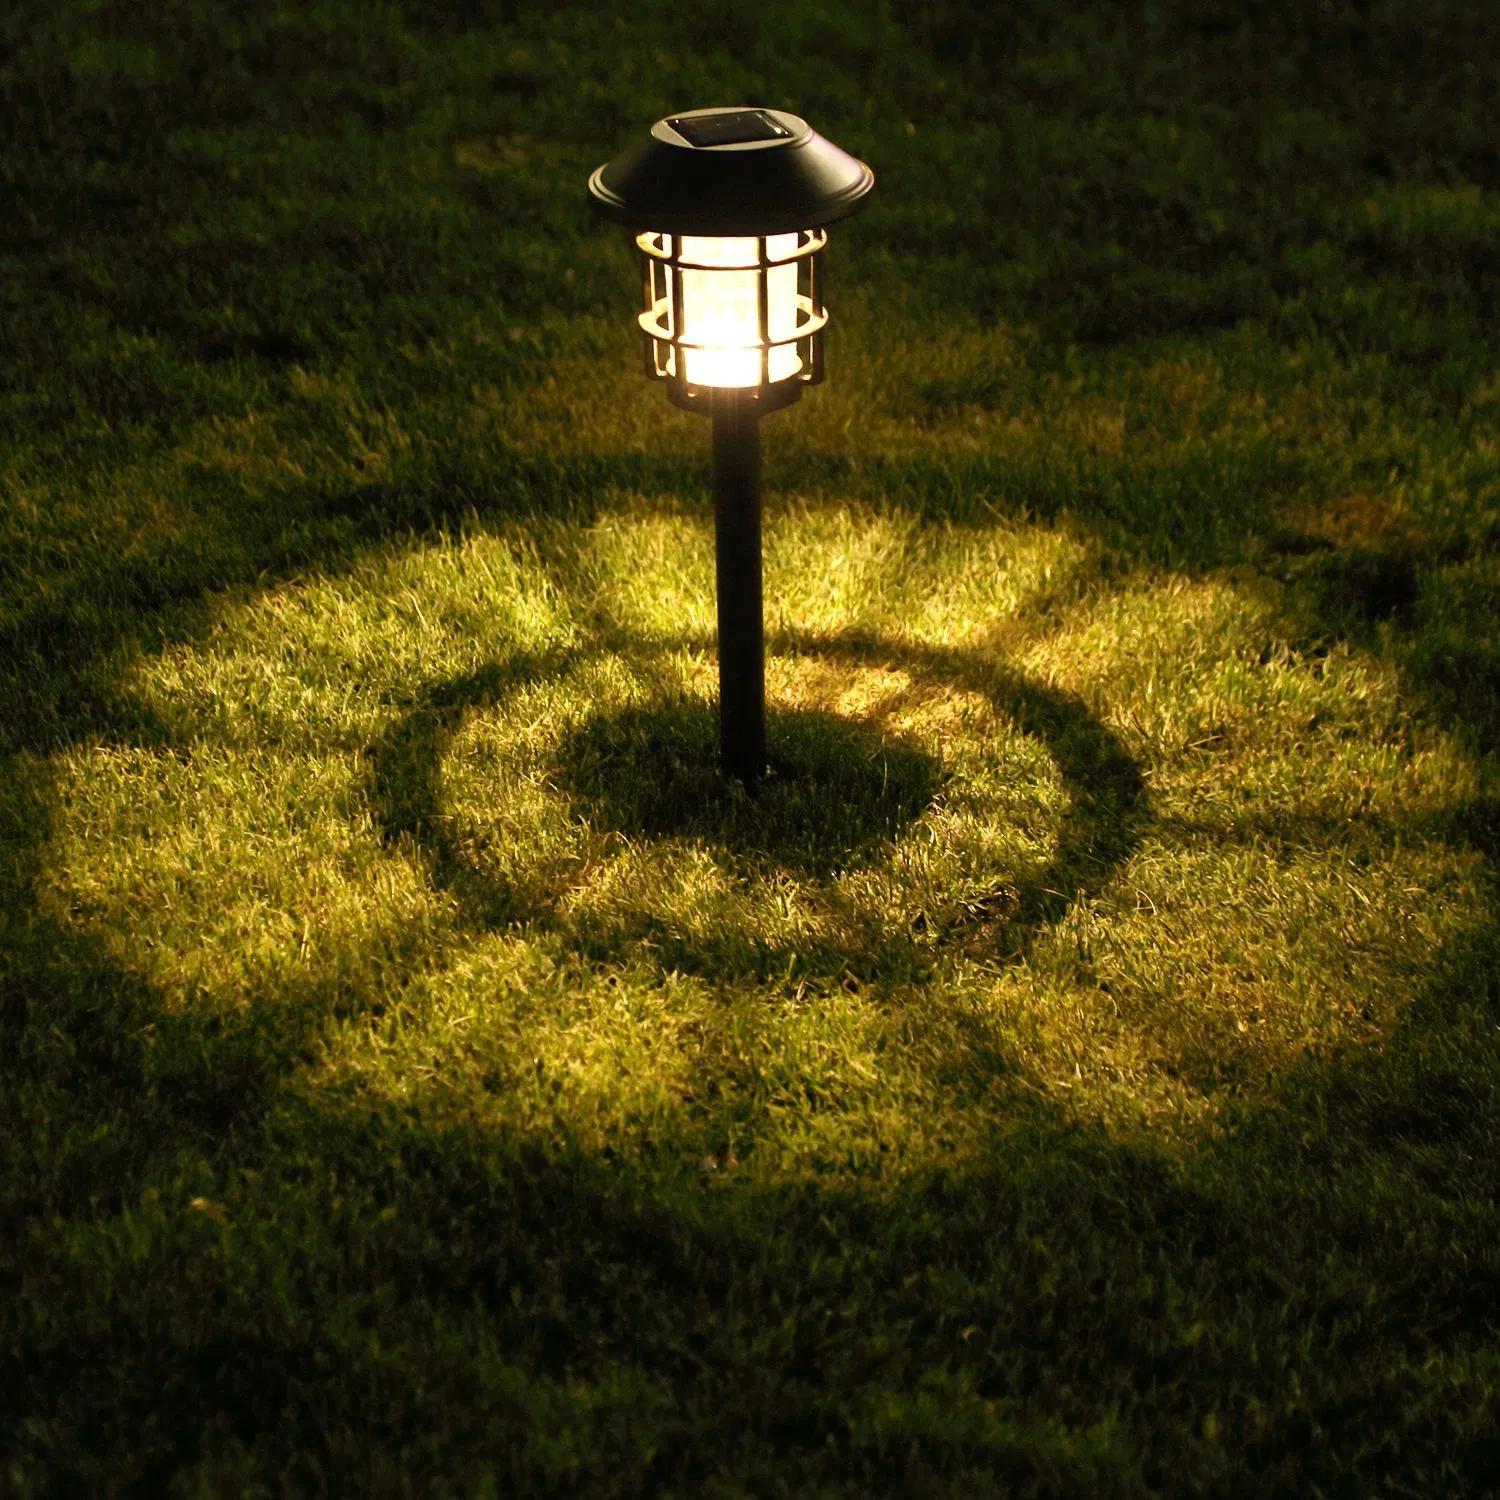 Светодиод солнечного света в саду на открытом воздухе на солнечной энергии лампы фонаря водонепроницаемый пейзаж для освещения дорожек патио во дворе газон украшения